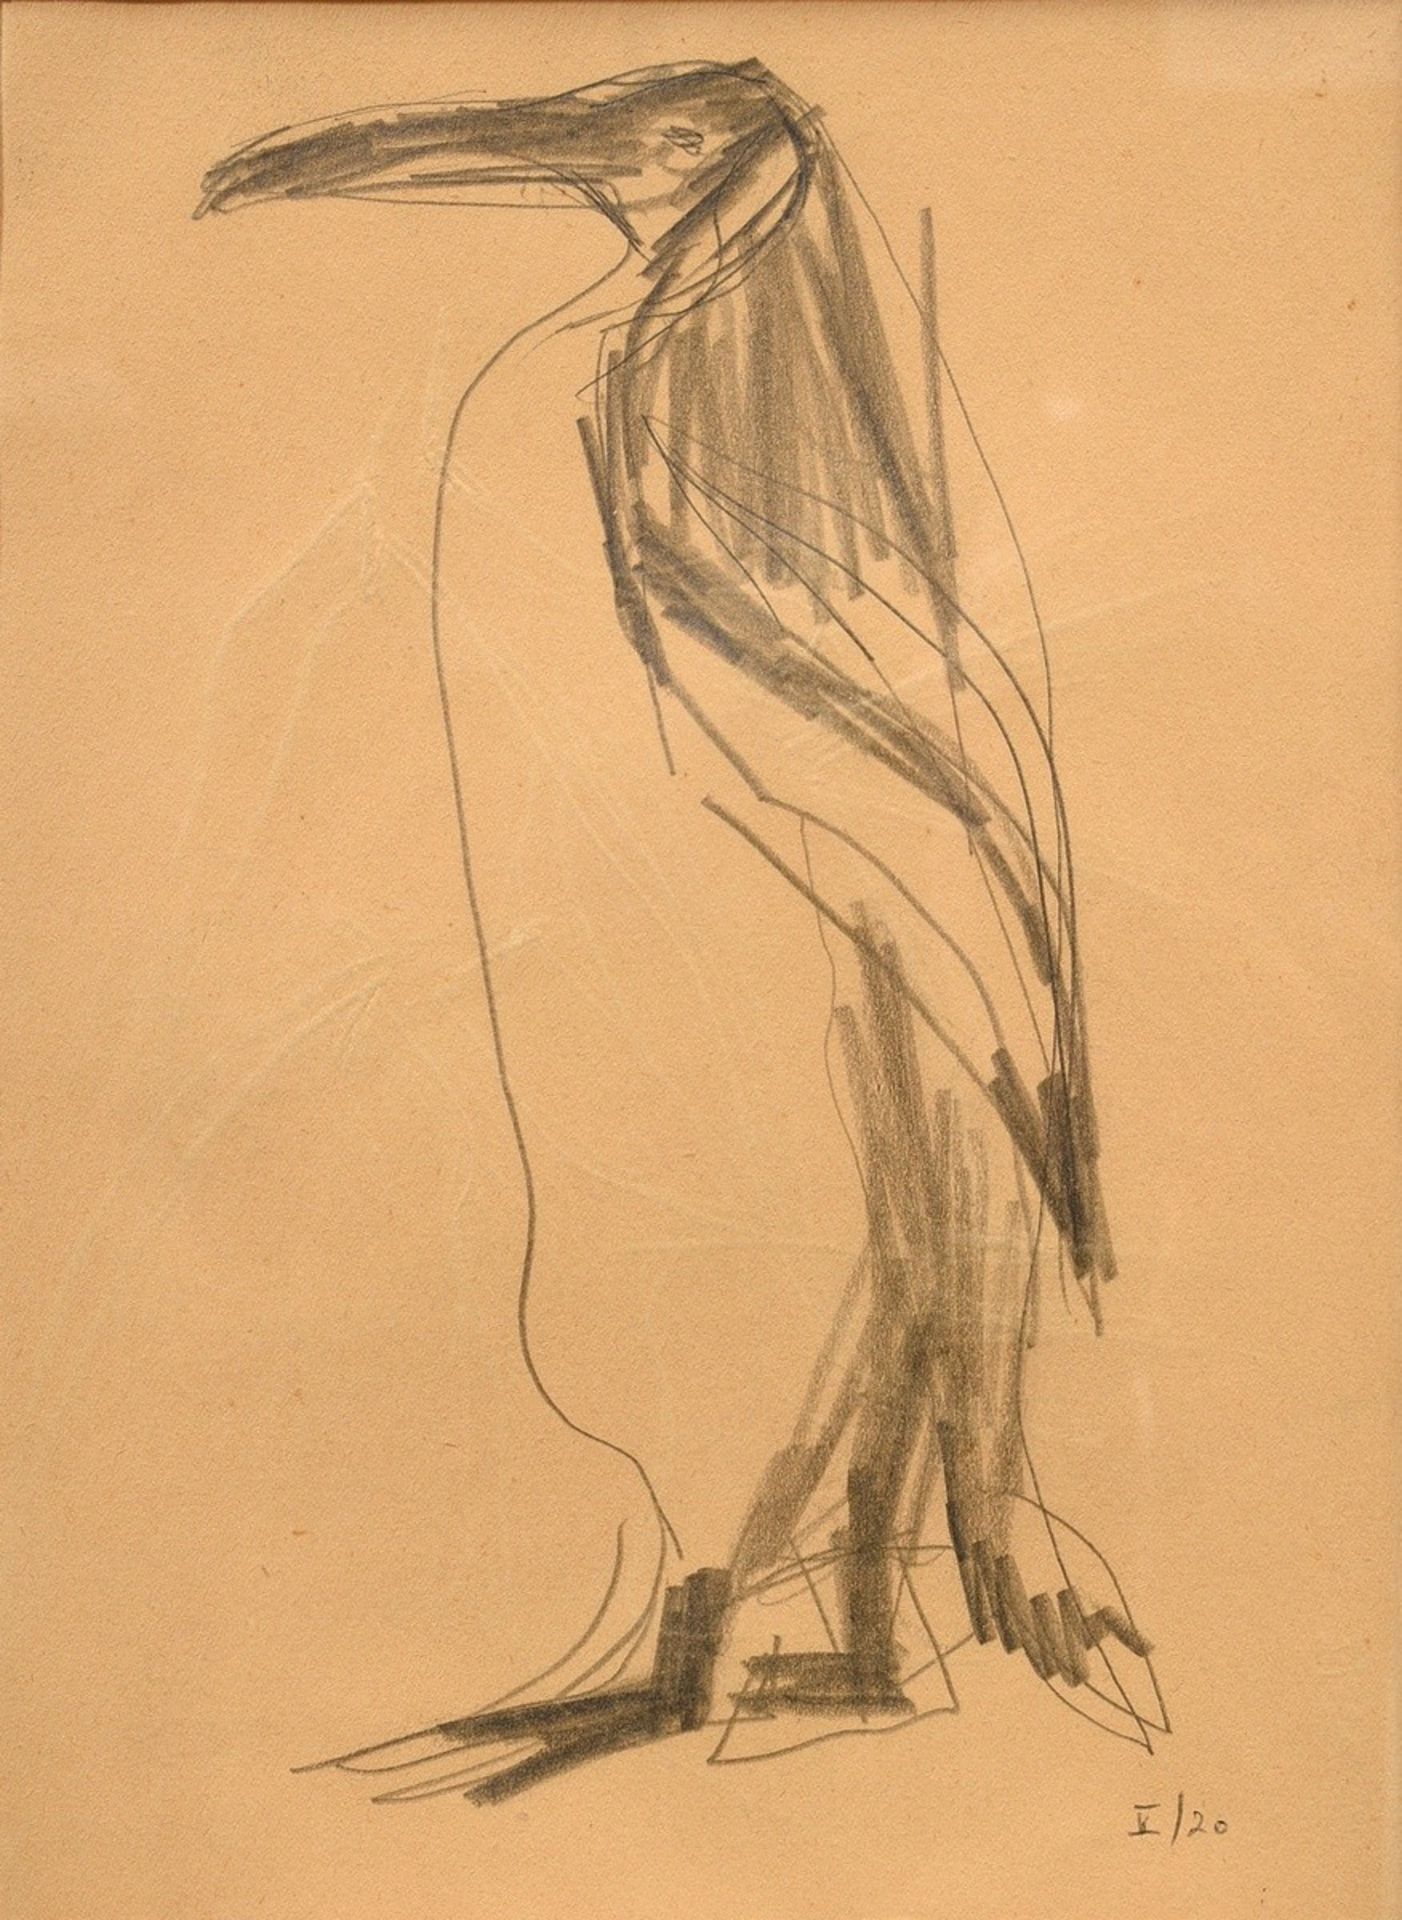 Nesch, Rolf (1893-1975) "Penguin" c. 1930, inscr. "V/20" at lower right, "Gazellen" on verso, inscr